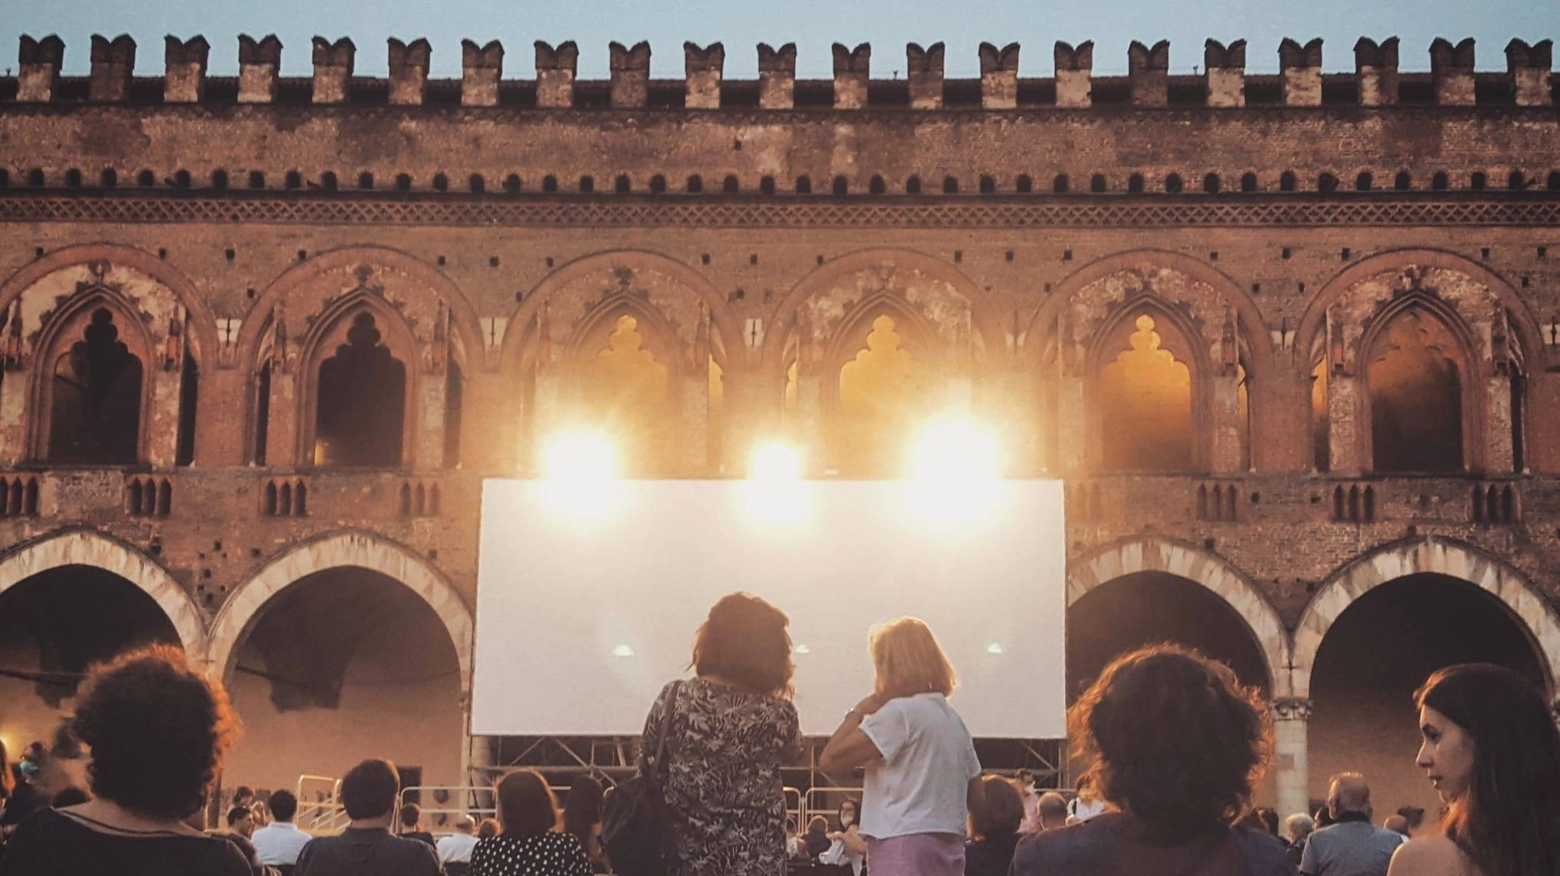 Vnerdì "Il sol dell'avvenire" di Moretti aprirà la rassegna Cinema sotto le stelle che continuerà fino al 5 settembre